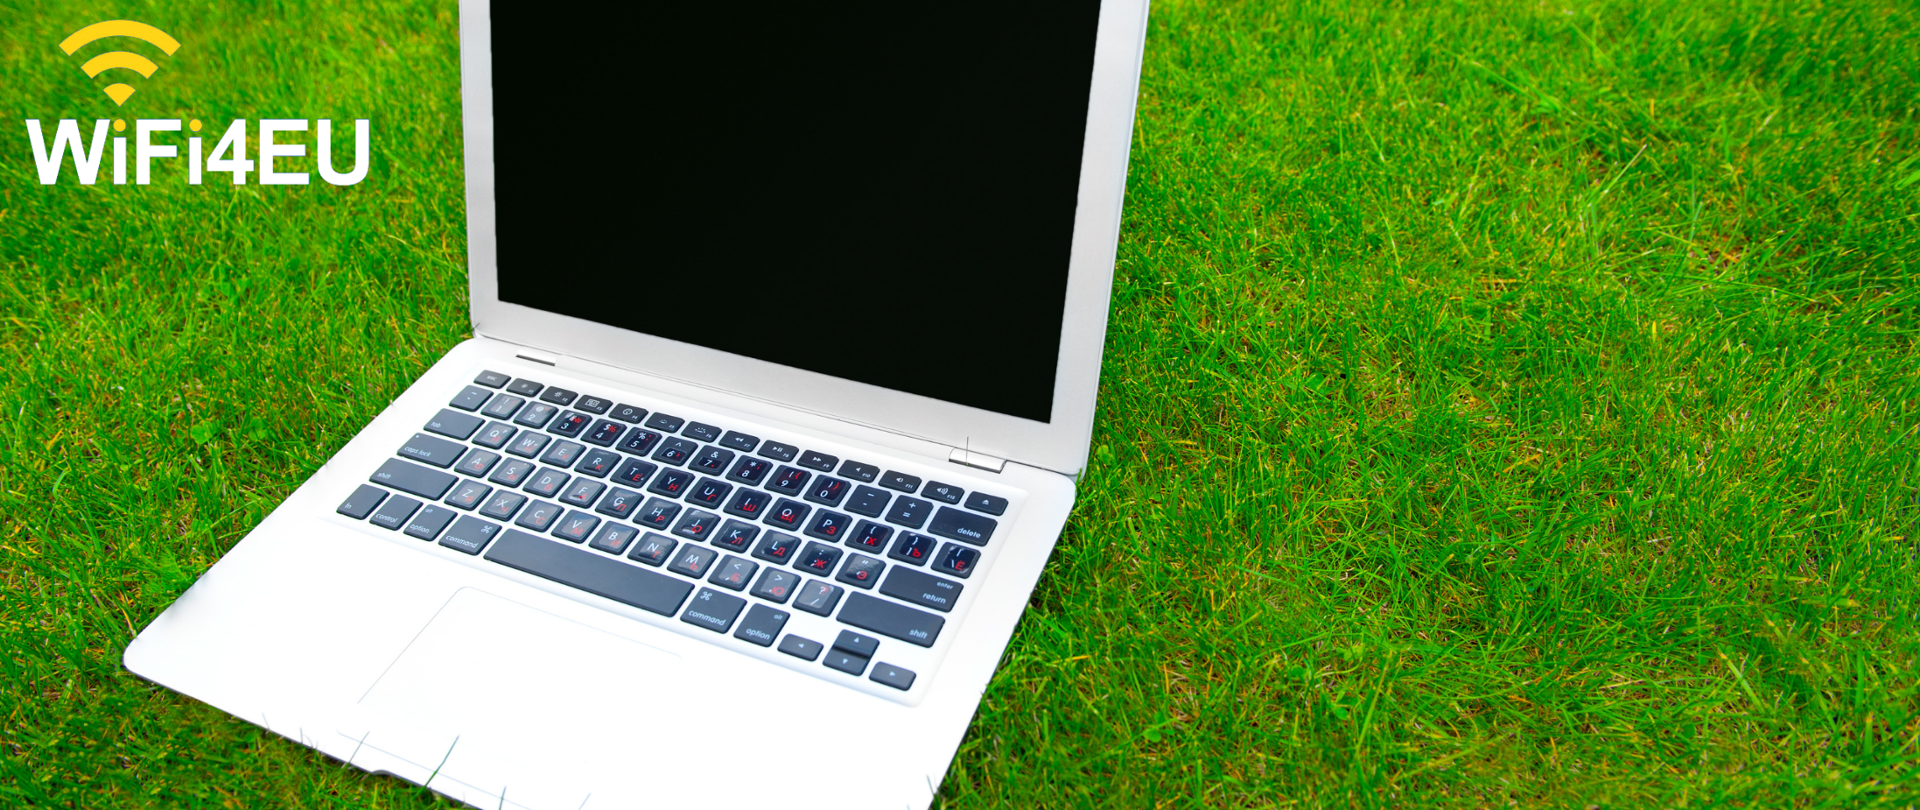 Laptop na trawie.